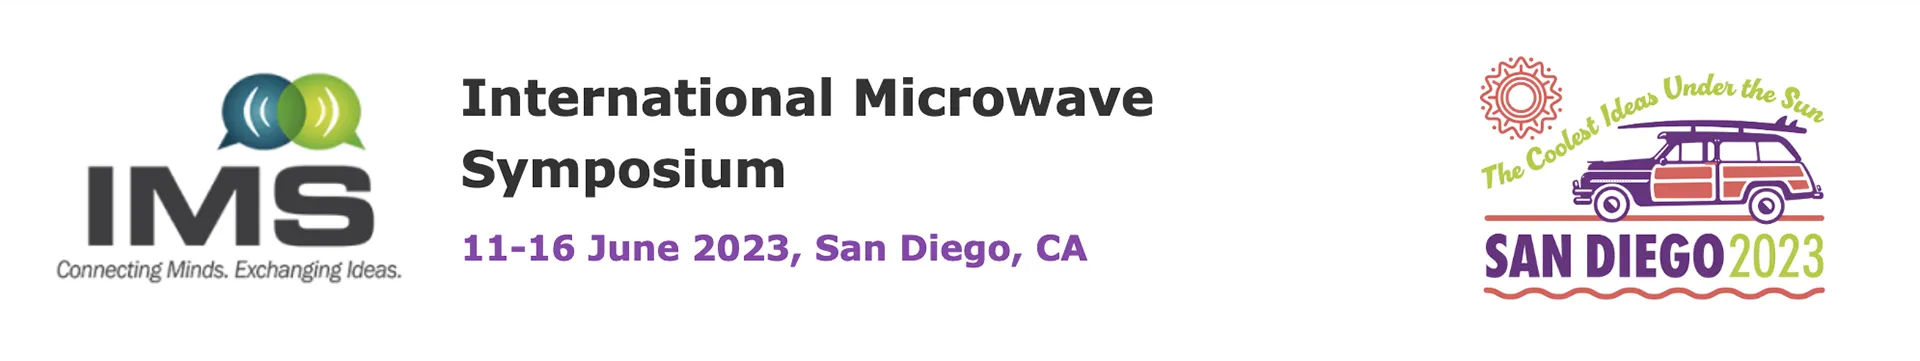 International Microwave Symposium (IMS) 2023